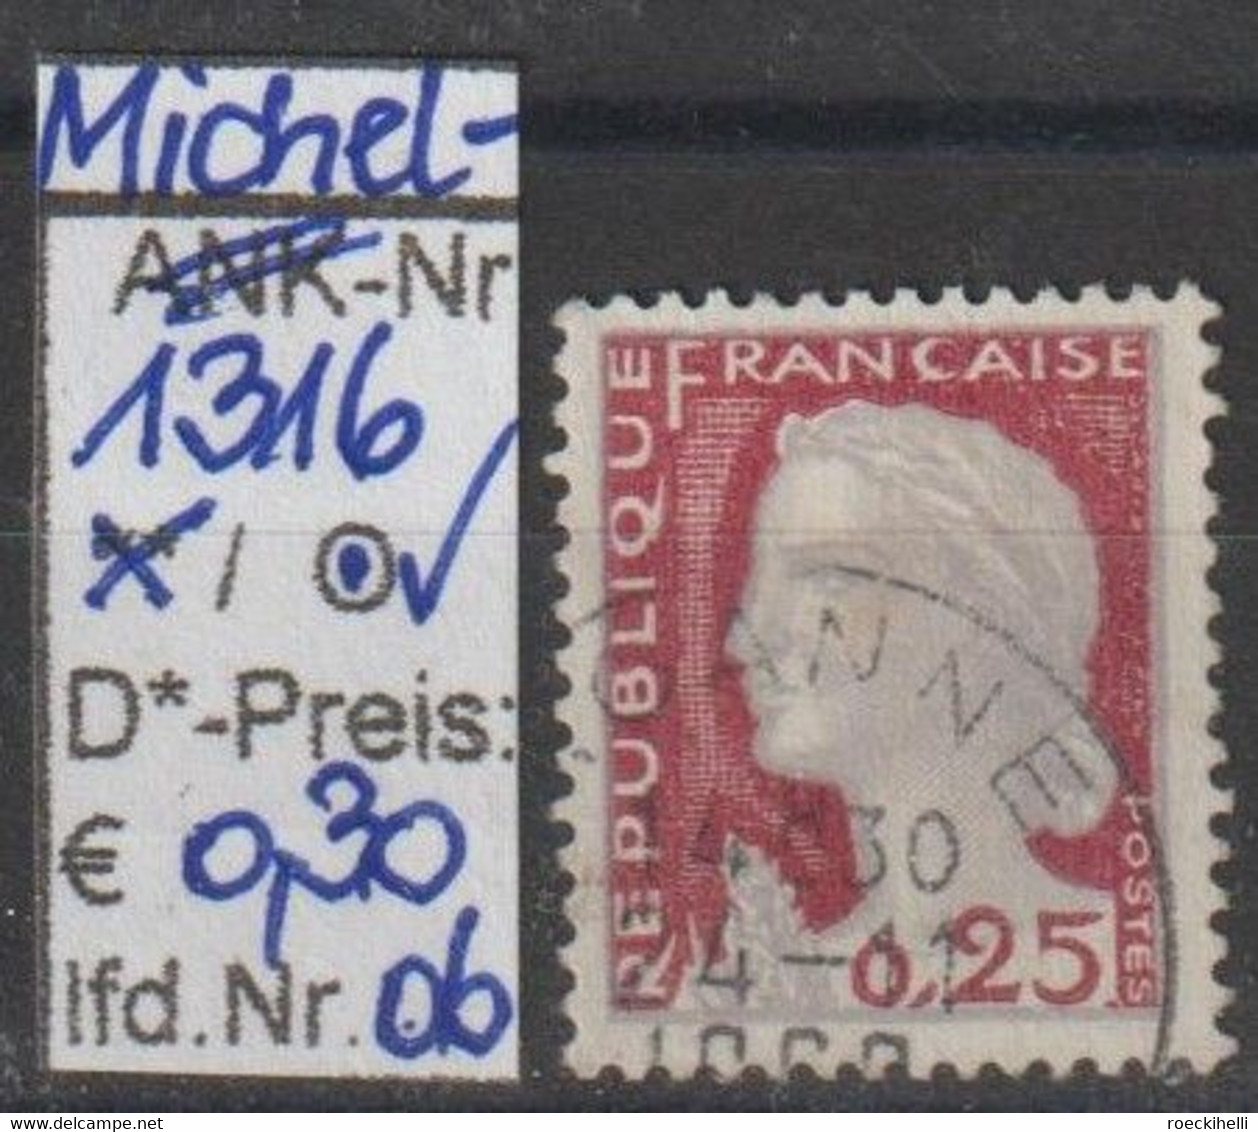 1960 - FRANKREICH - FM/DM "Marianne (Decaris)" 0,25 Fr grau/karmin - o gestempelt - s.Scan (fr 1316o 01-15)